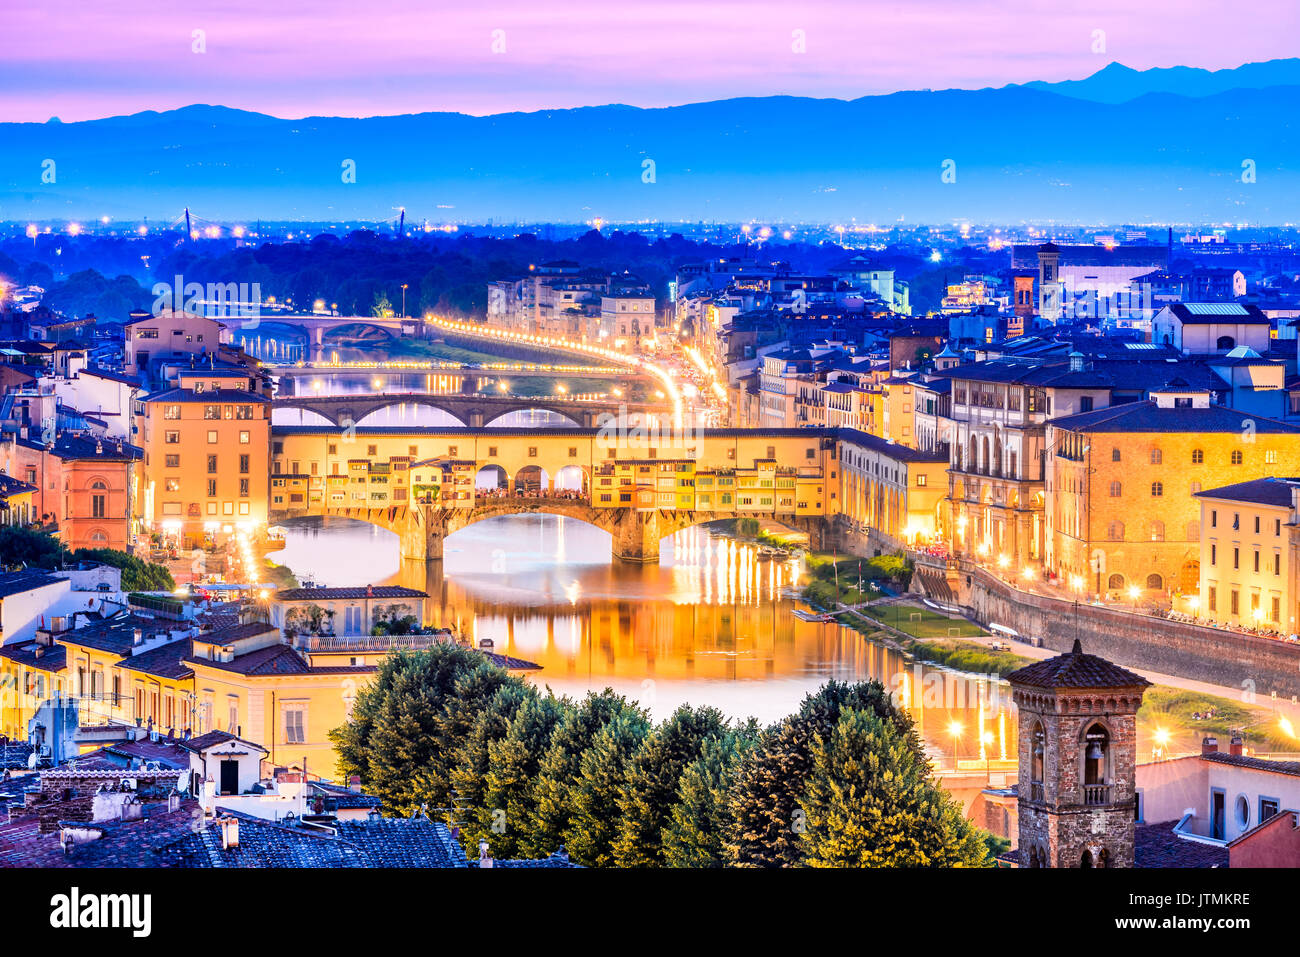 Toskana - Florenz, Ponte Vecchio und Palazzo Vecchio in der Nacht, Architektur der Renaissance in Italien. Stockfoto